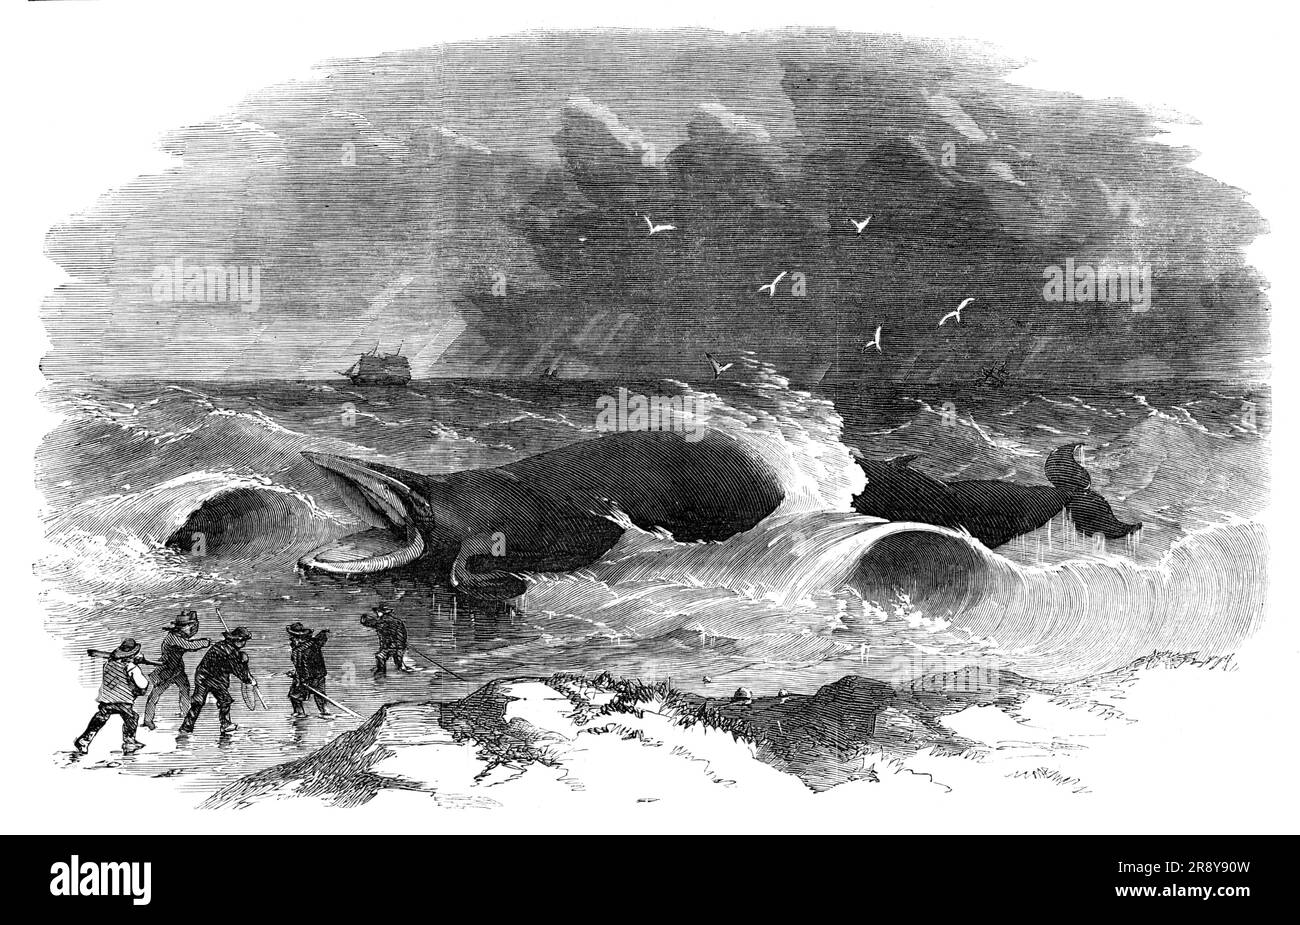 Whale échouée à Winterton, 1857. « Ce magnifique spécimen de la tribu des baleines a été conduit à Winterton par les gales qui ont visité la côte de Norfolk... quand la baleine s'est retrouvée sur la terre, il a crié fort, Et il a lutté le plus lustiquement pour retrouver la profondeur... la couleur de la couche extérieure est brun foncé sur le dos, se volatilisant vers le corps d'un gris bleuâtre. Le corps est blanc; aussi environ deux pieds du nez et la peau est blanche; le reste de la partie extérieure est noir. Nous comprenons que la peau, la tête et la queue ont été retirées de la carcasse pour exposition. La baleine est dit de peser abou Banque D'Images